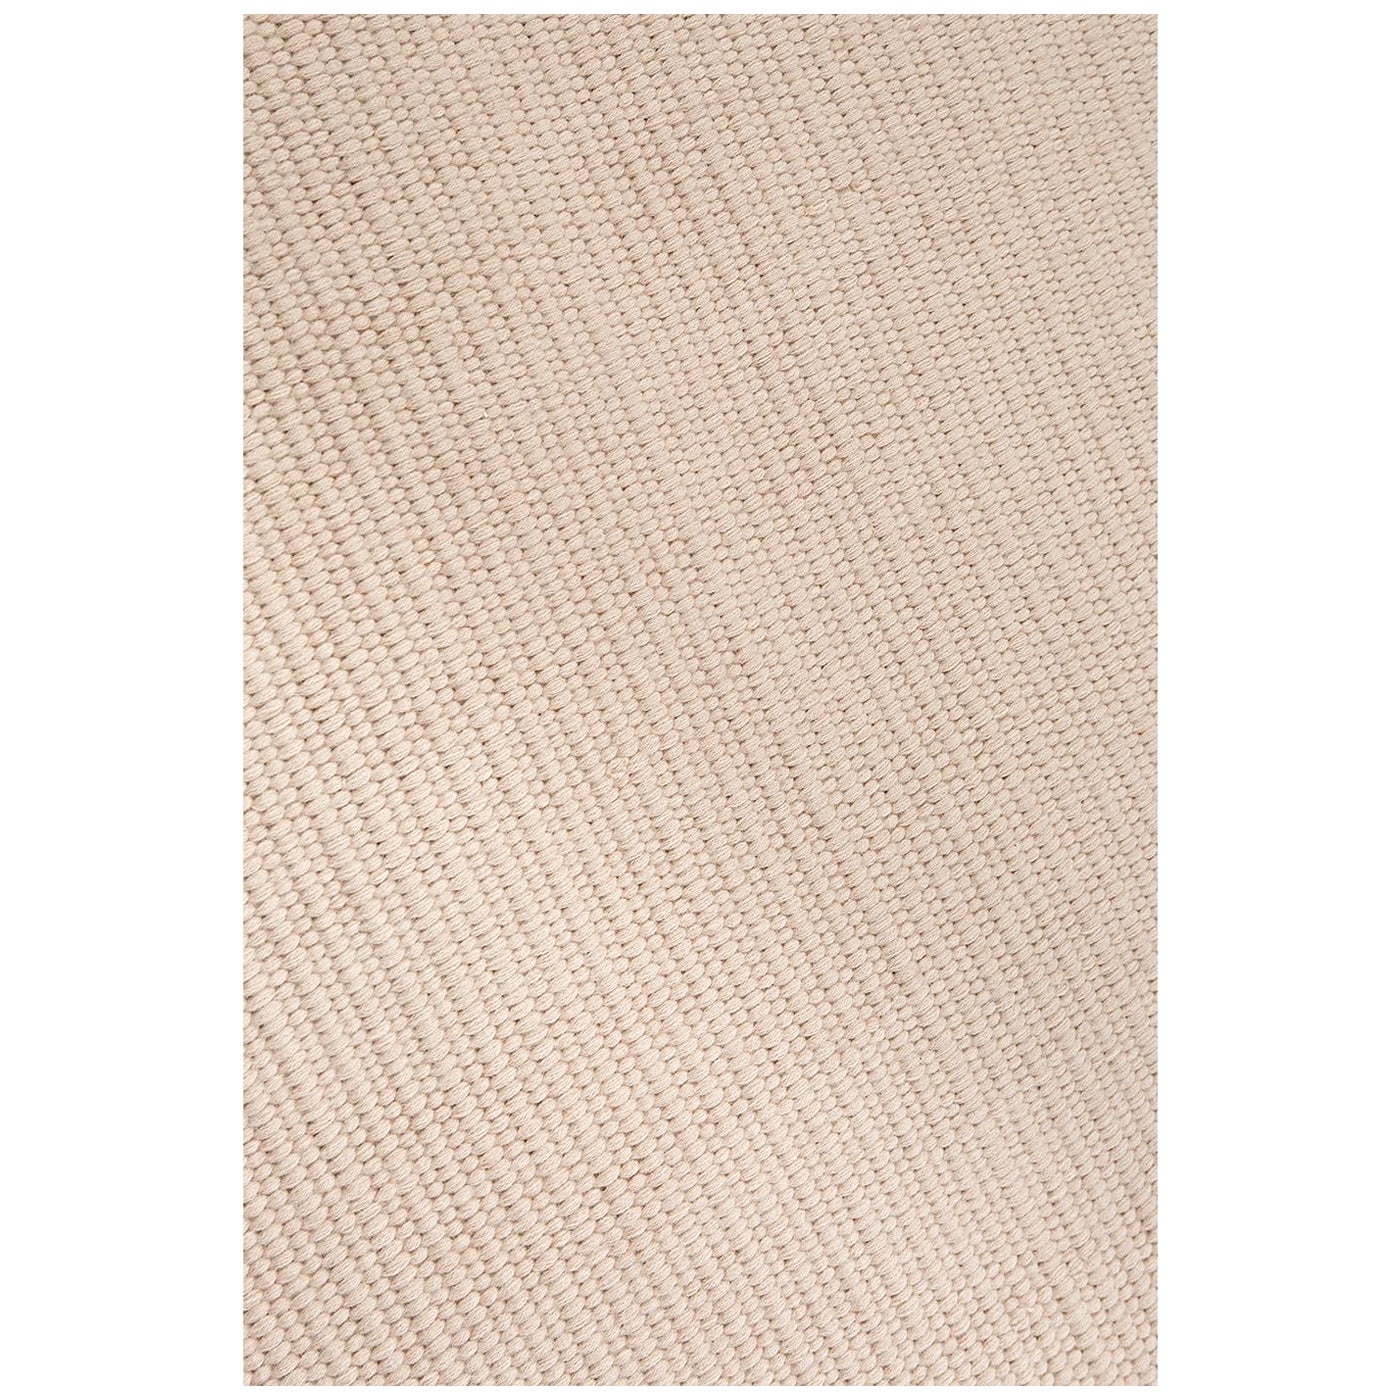 Handgewebter Teppich aus nachhaltigem Alpaka - 'Mesh' - 300 x 400 cm 